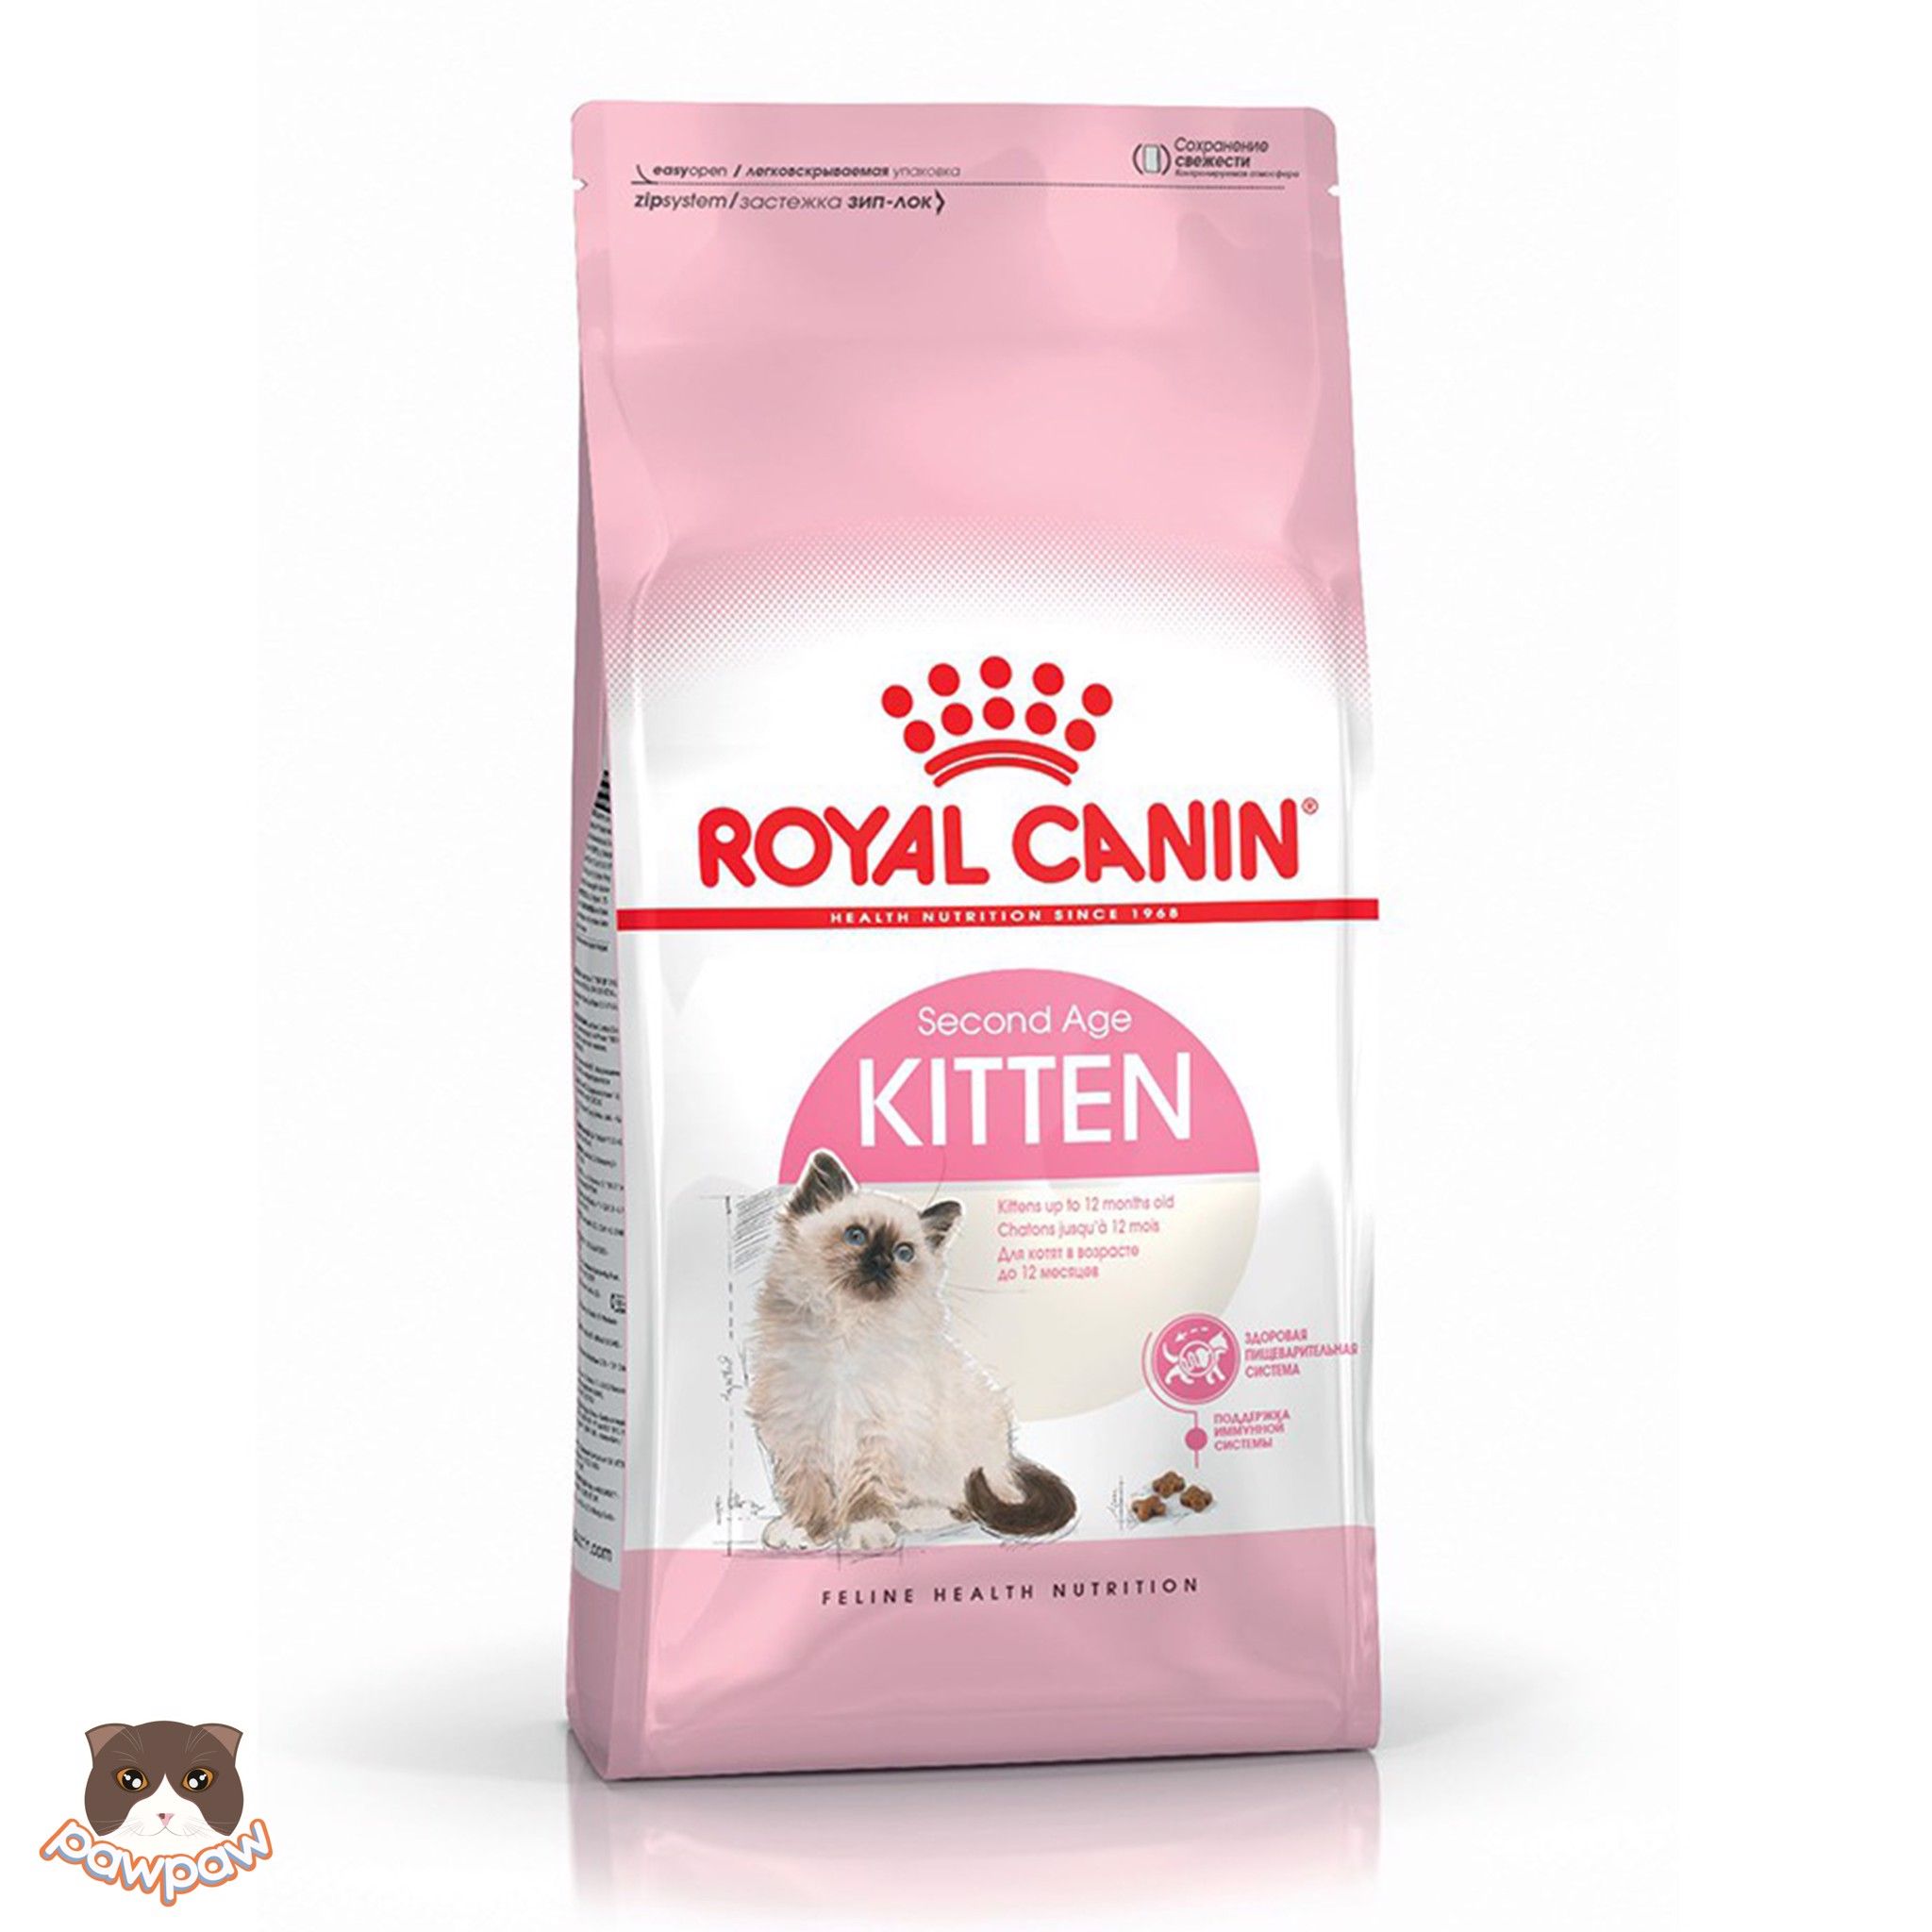  Hạt Royal Canin Kitten cho mèo con 